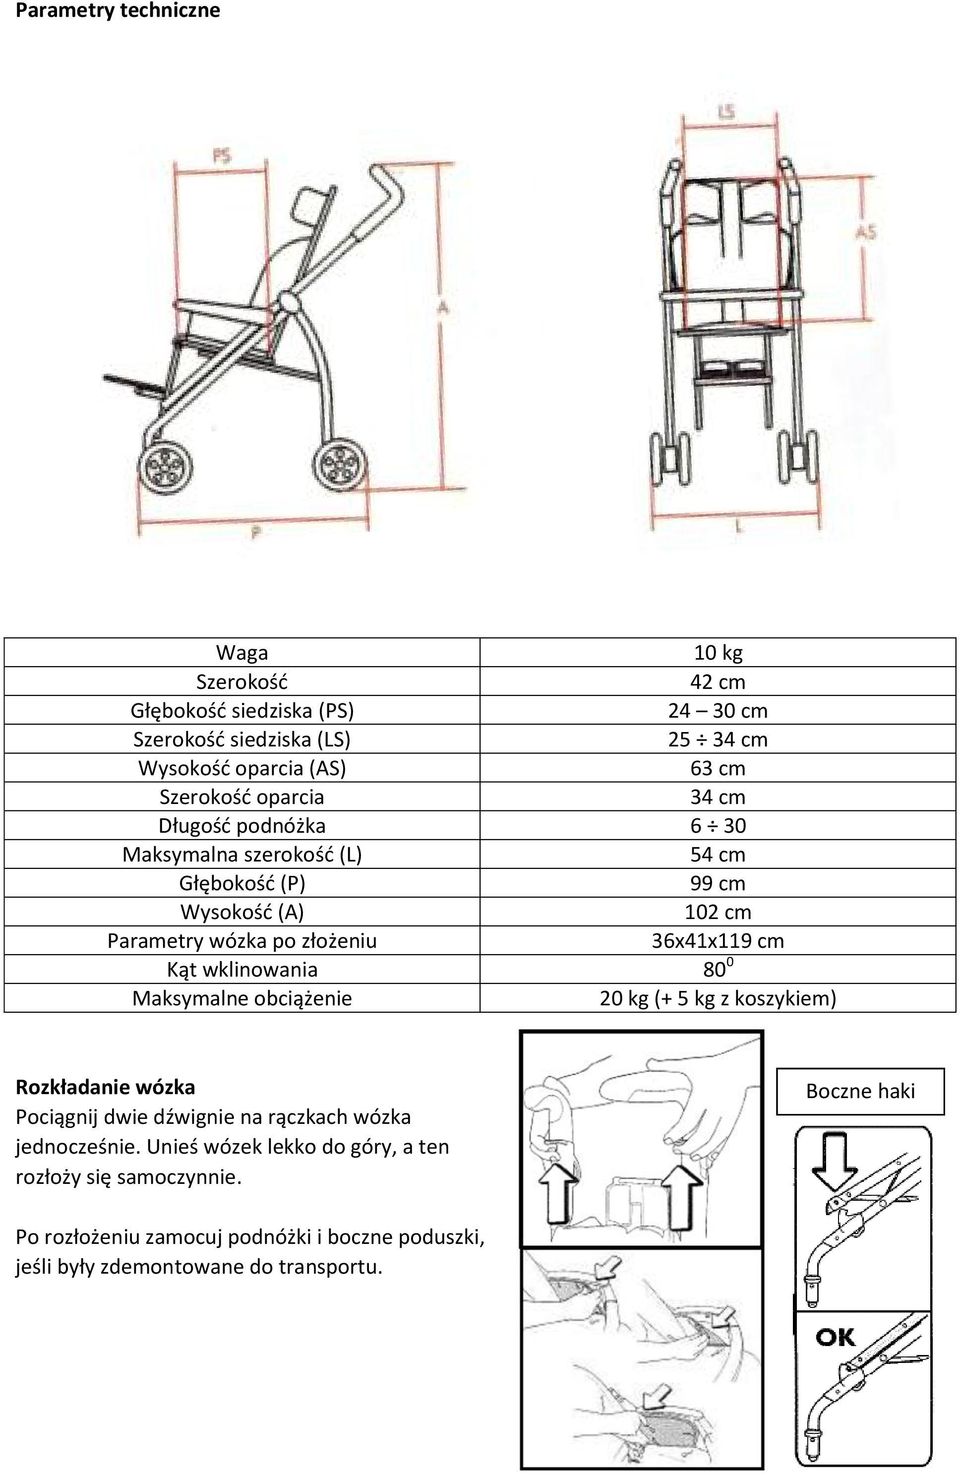 36x41x119 cm Kąt wklinowania 80 0 Maksymalne obciążenie 20 kg (+ 5 kg z koszykiem) Rozkładanie wózka Pociągnij dwie dźwignie na rączkach wózka